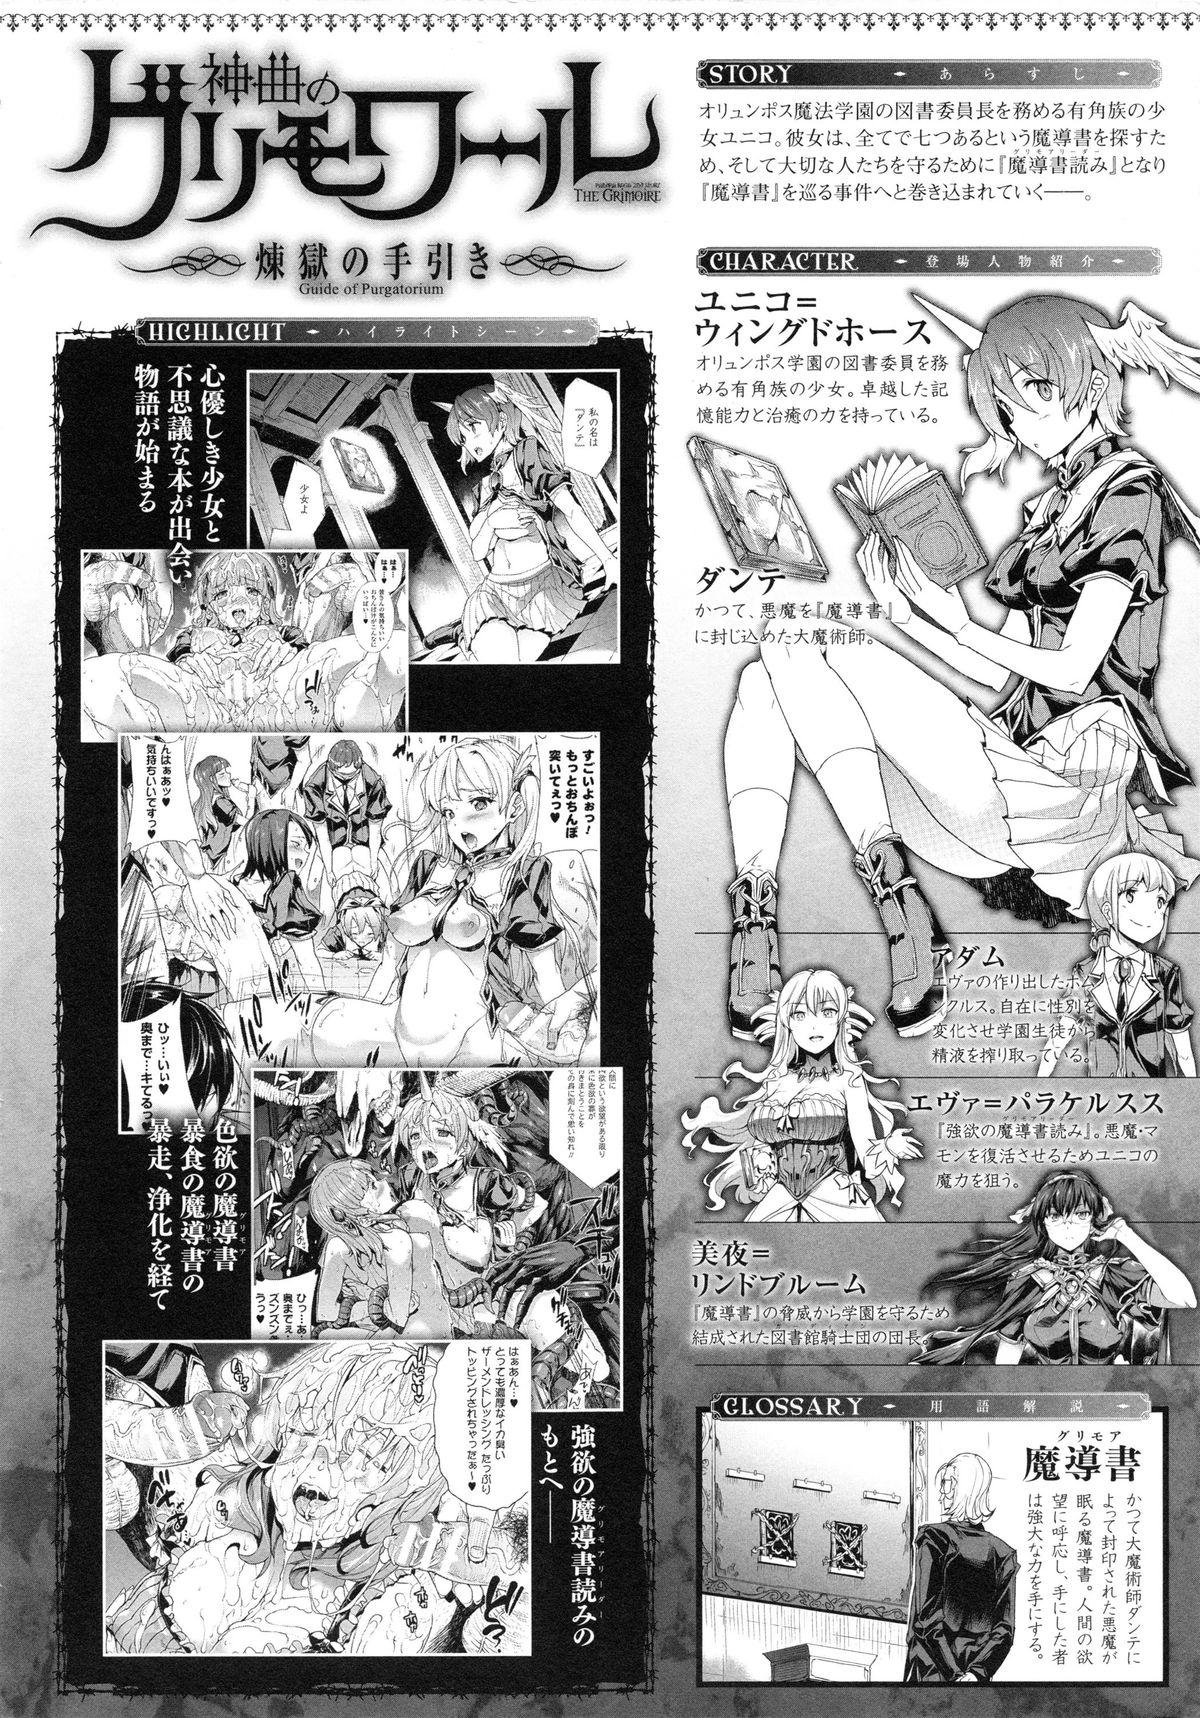 Blackdick Shinkyoku no Grimoire II Girlfriend - Page 9